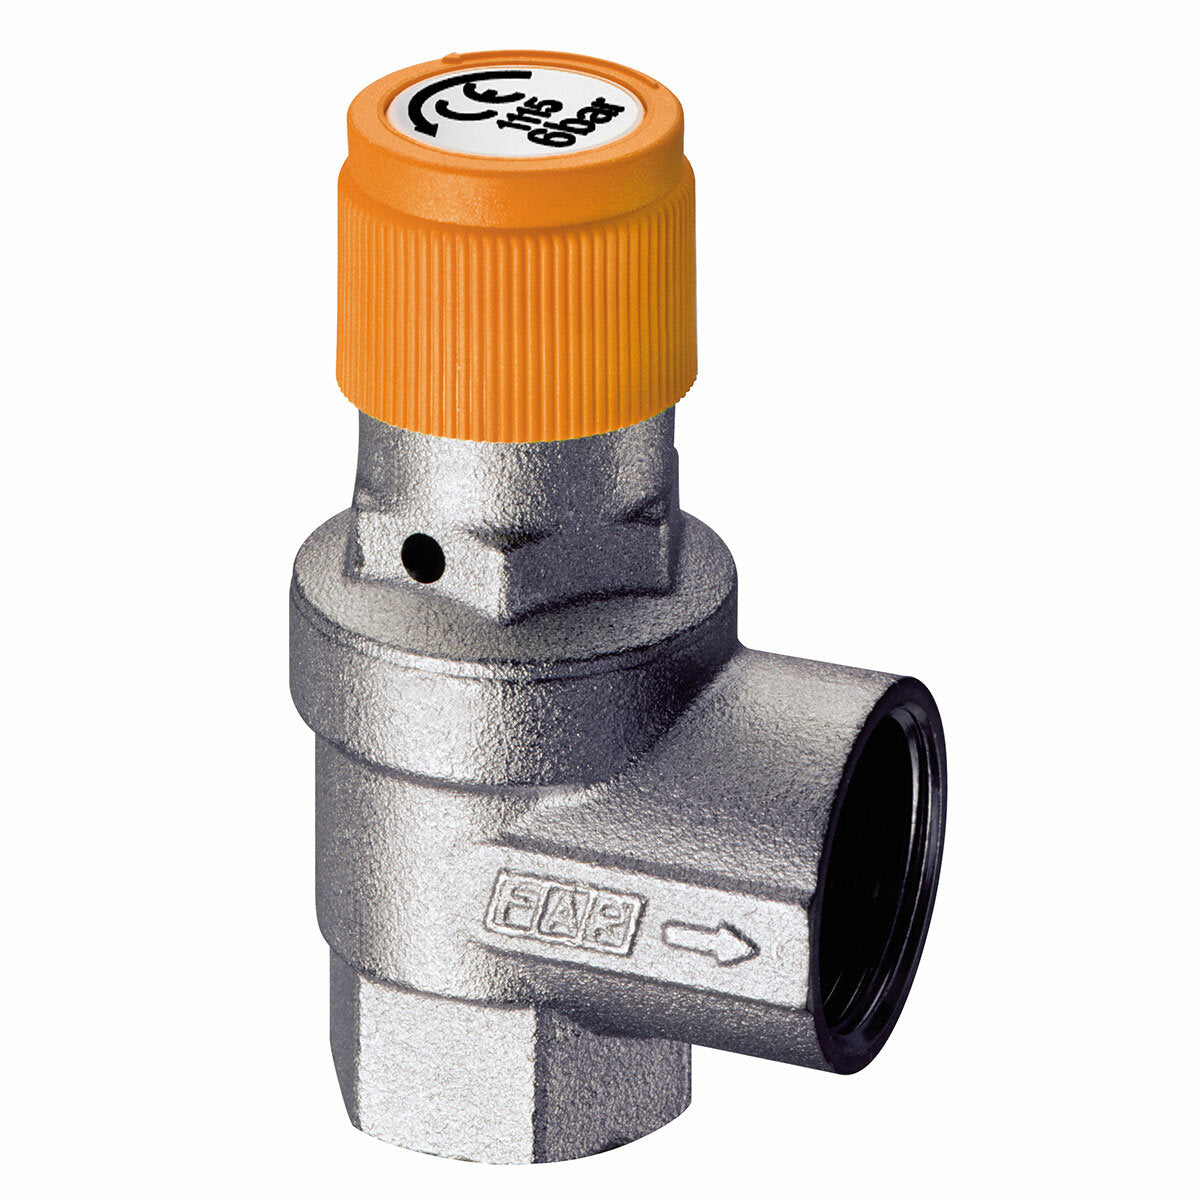 FAR safety valve for solar systems 1/2” 6 bar